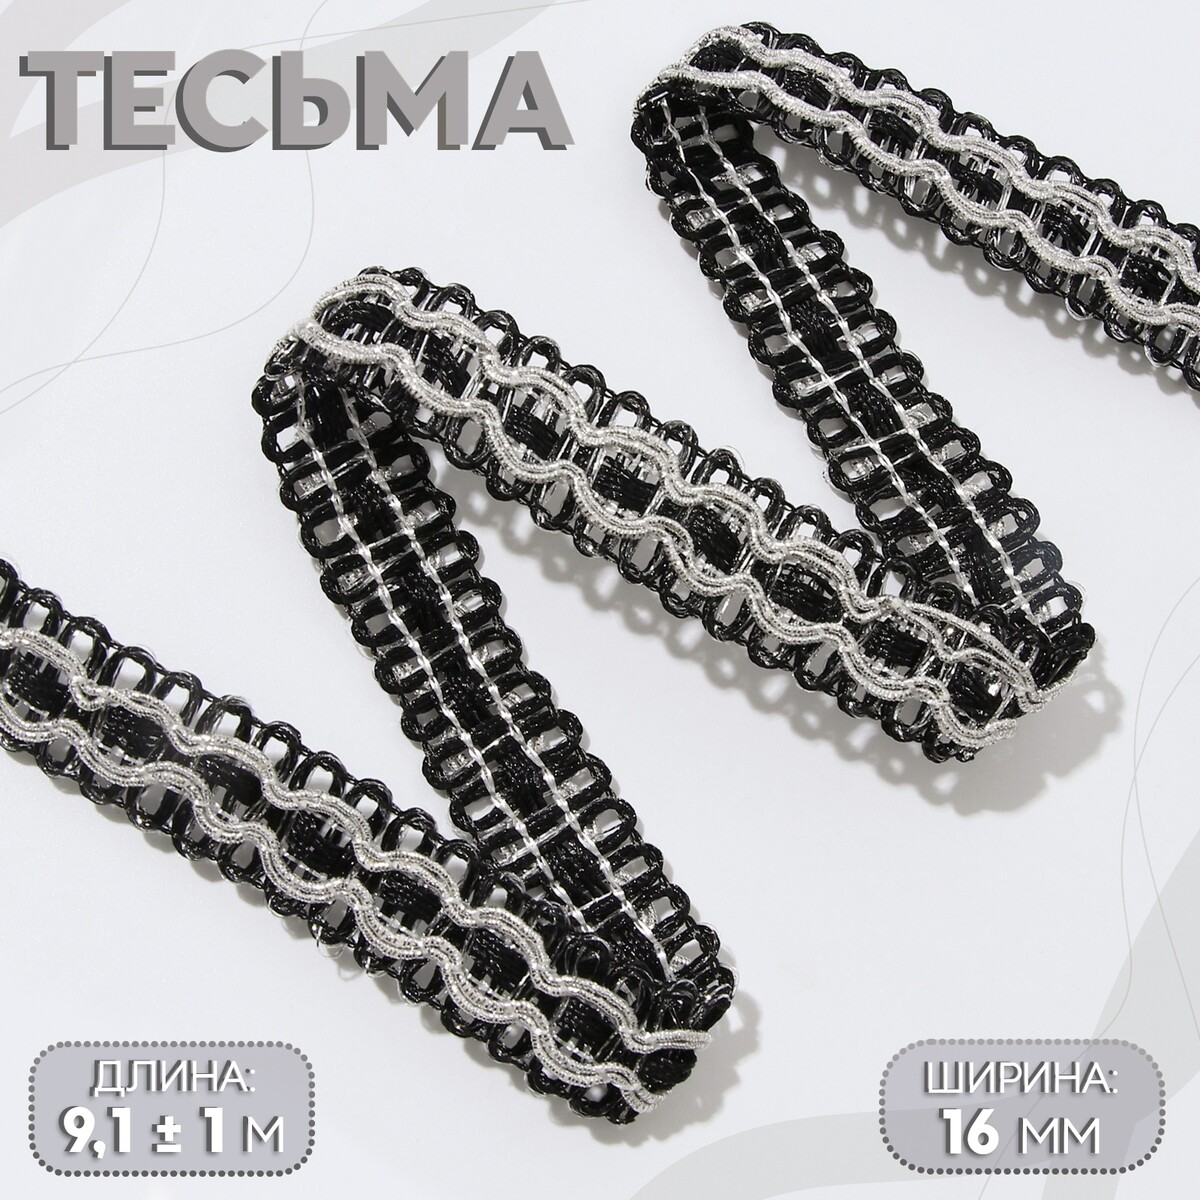 Тесьма декоративная, 16 мм, 9,1 ± 1 м, цвет черный/серебряный тесьма декоративная металлизированная 10 ± 1 м 15 мм серебряный